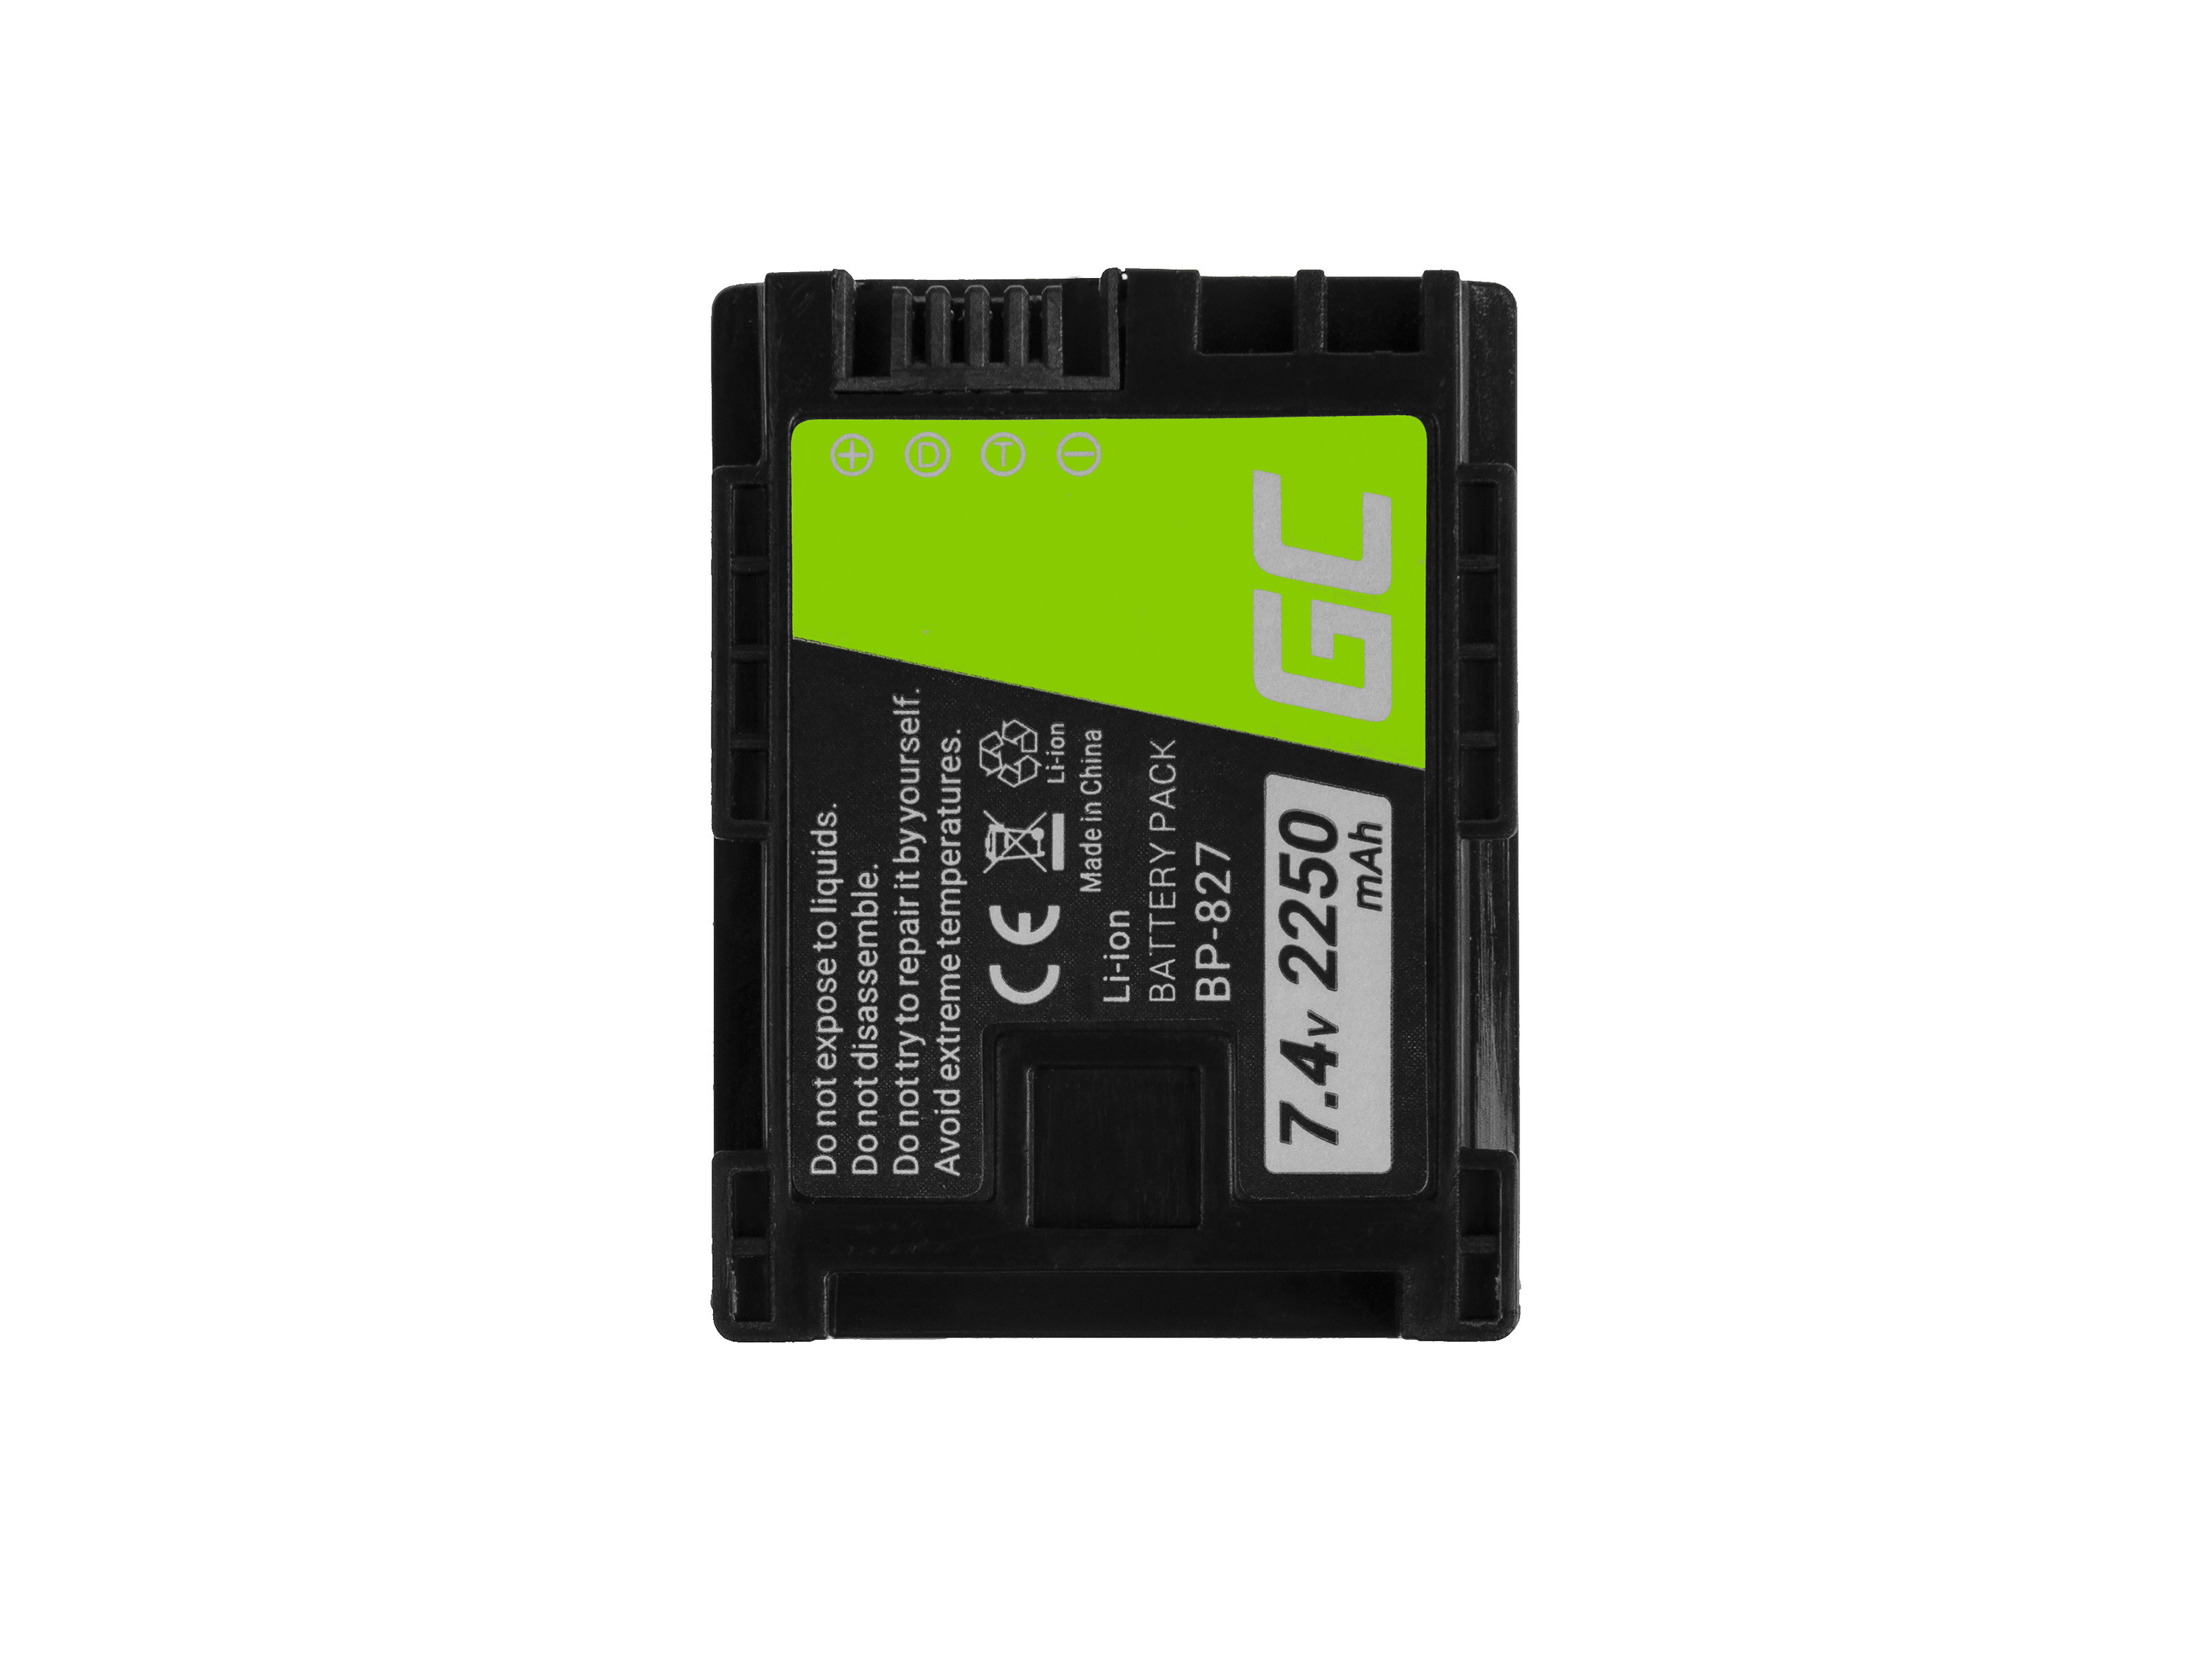 EOL-Green Cell Camera Battery BP-808 BP-809 BP-827 for Canon HF G10 S10 S21 S30 S100 S200 FS11 HF11 HF20 LEGRIA 7.4V 2250mAh